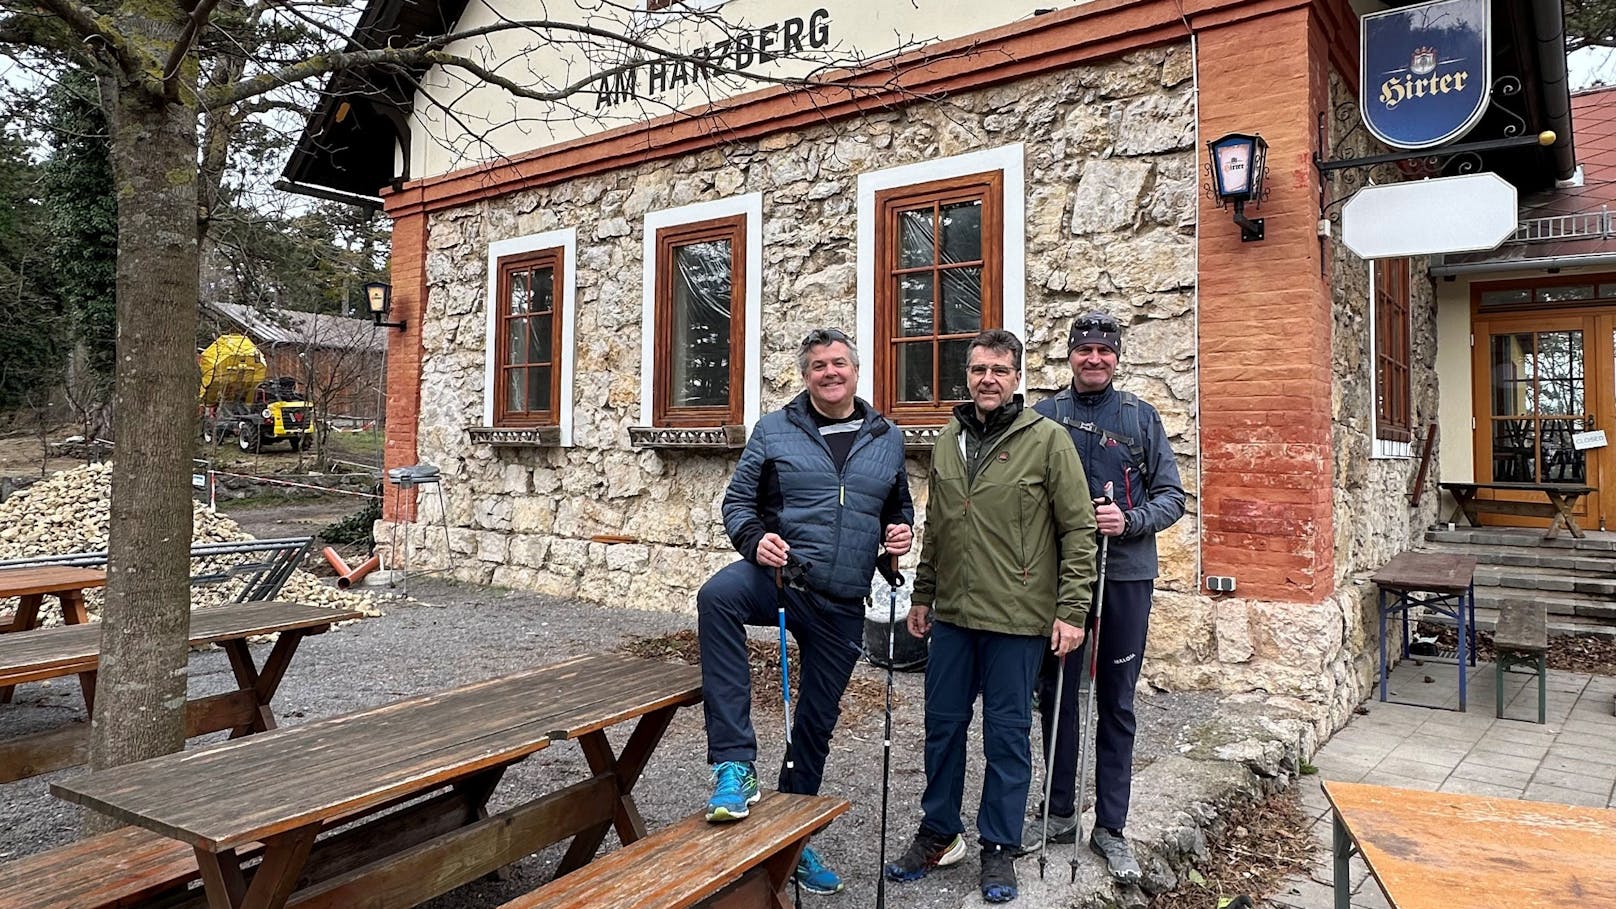 Beliebtes Lokal am Harzberg sperrt jetzt wieder auf